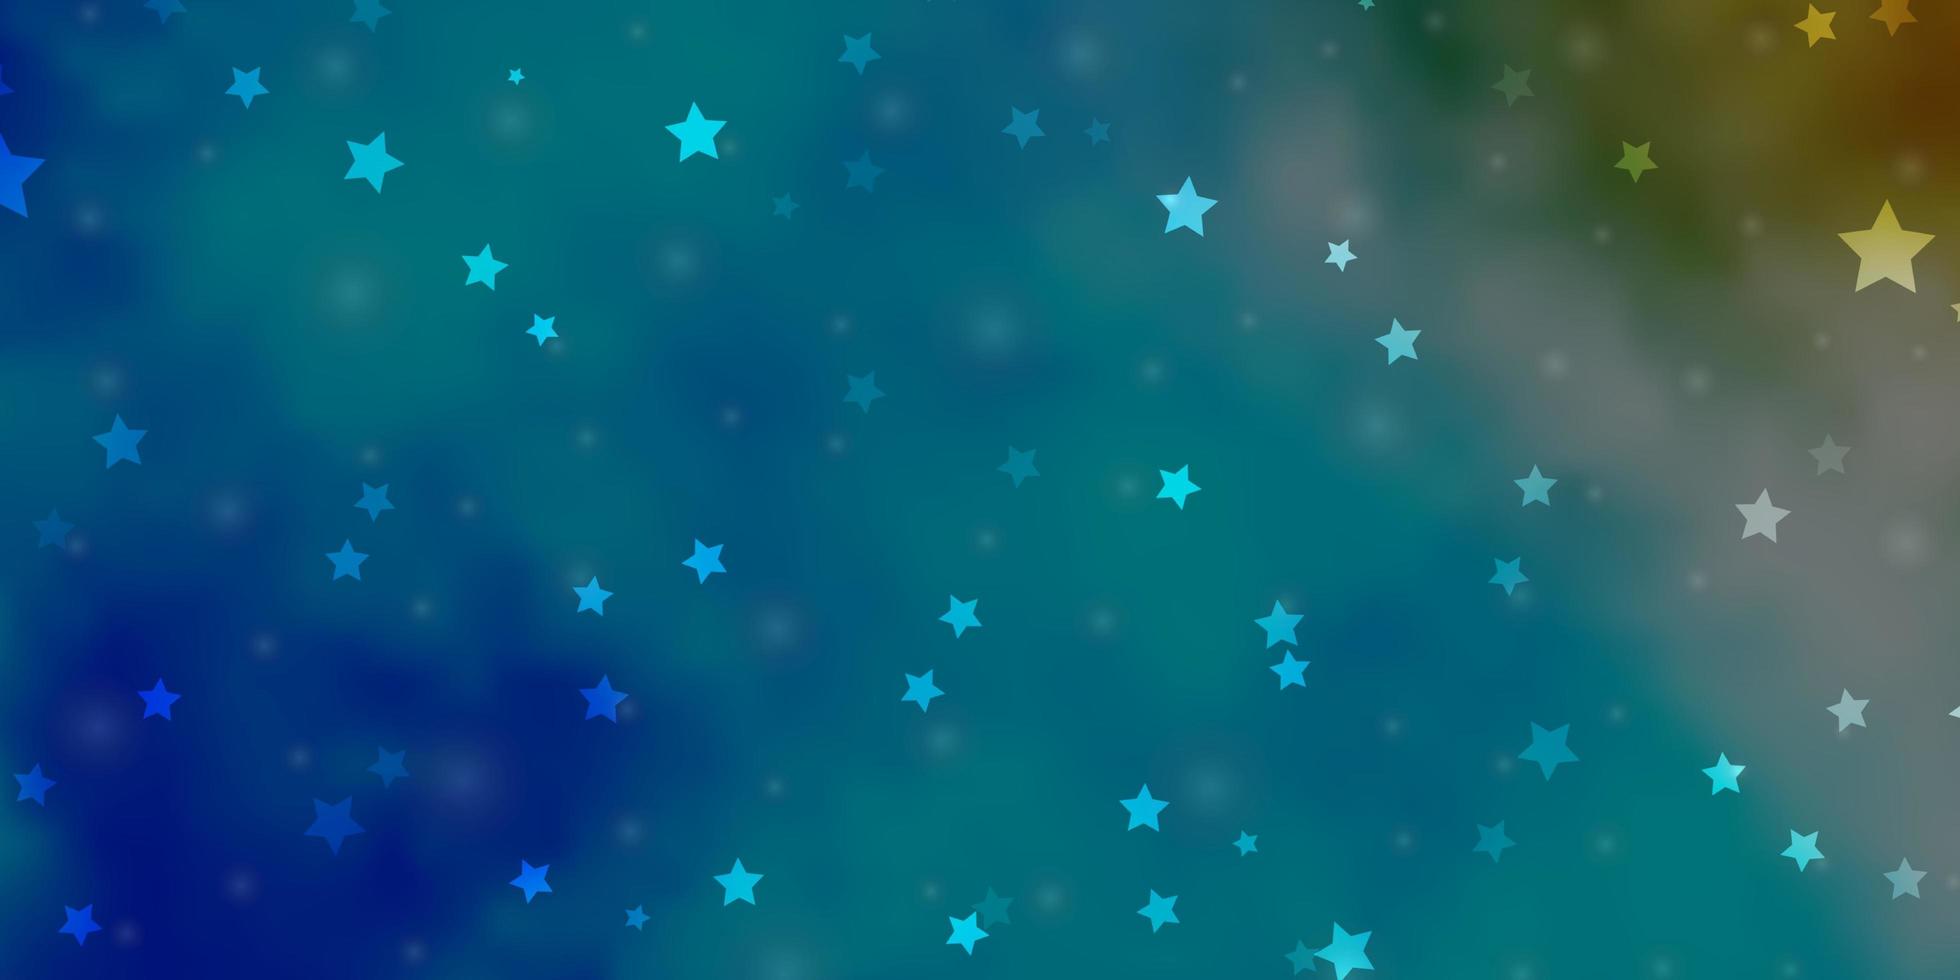 fundo vector azul claro com estrelas pequenas e grandes. ilustração decorativa com estrelas no modelo abstrato. tema para telefones celulares.